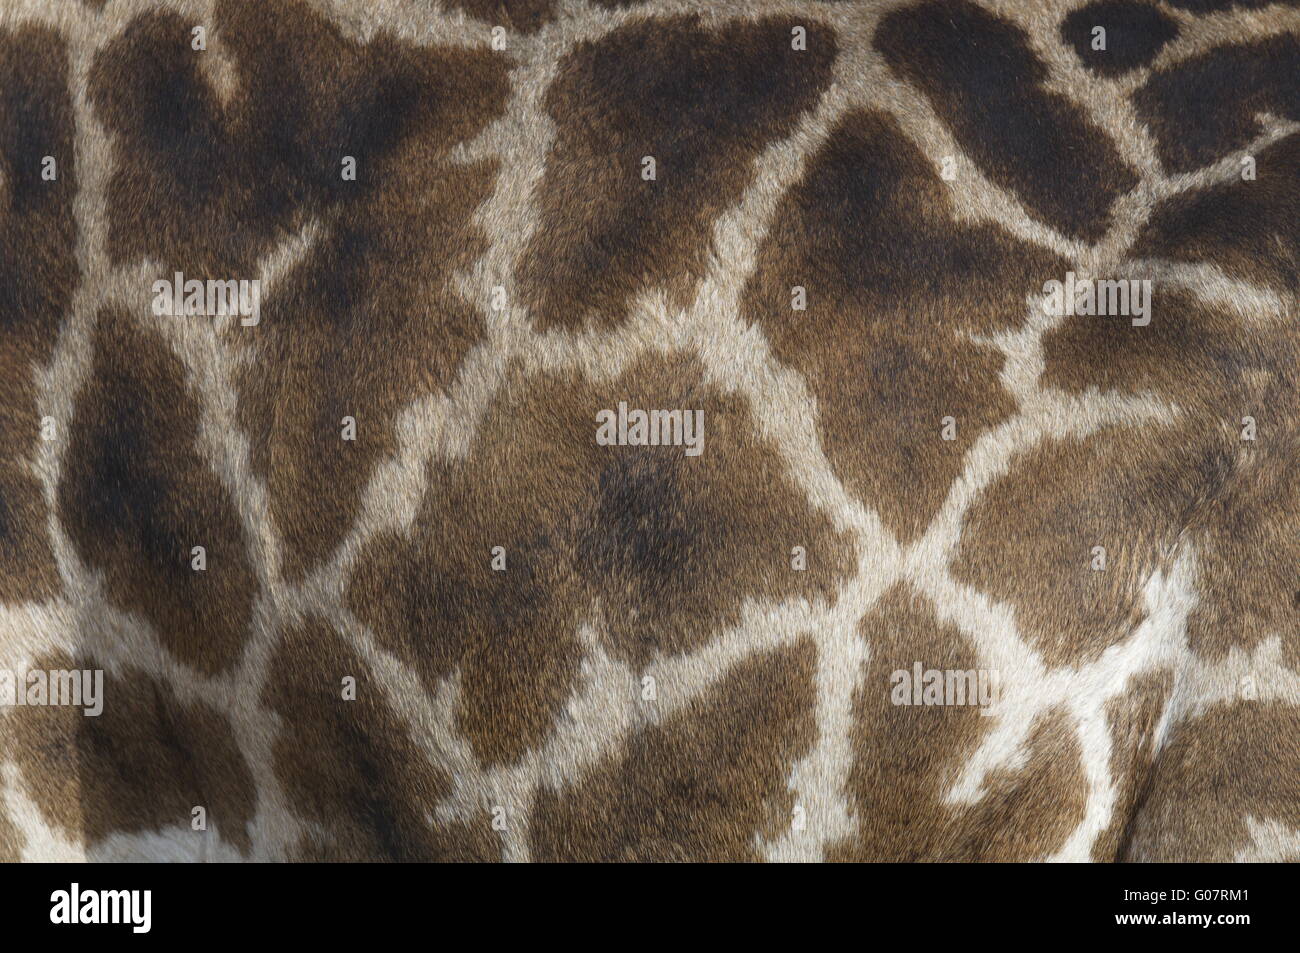 Impression girafe Banque D'Images